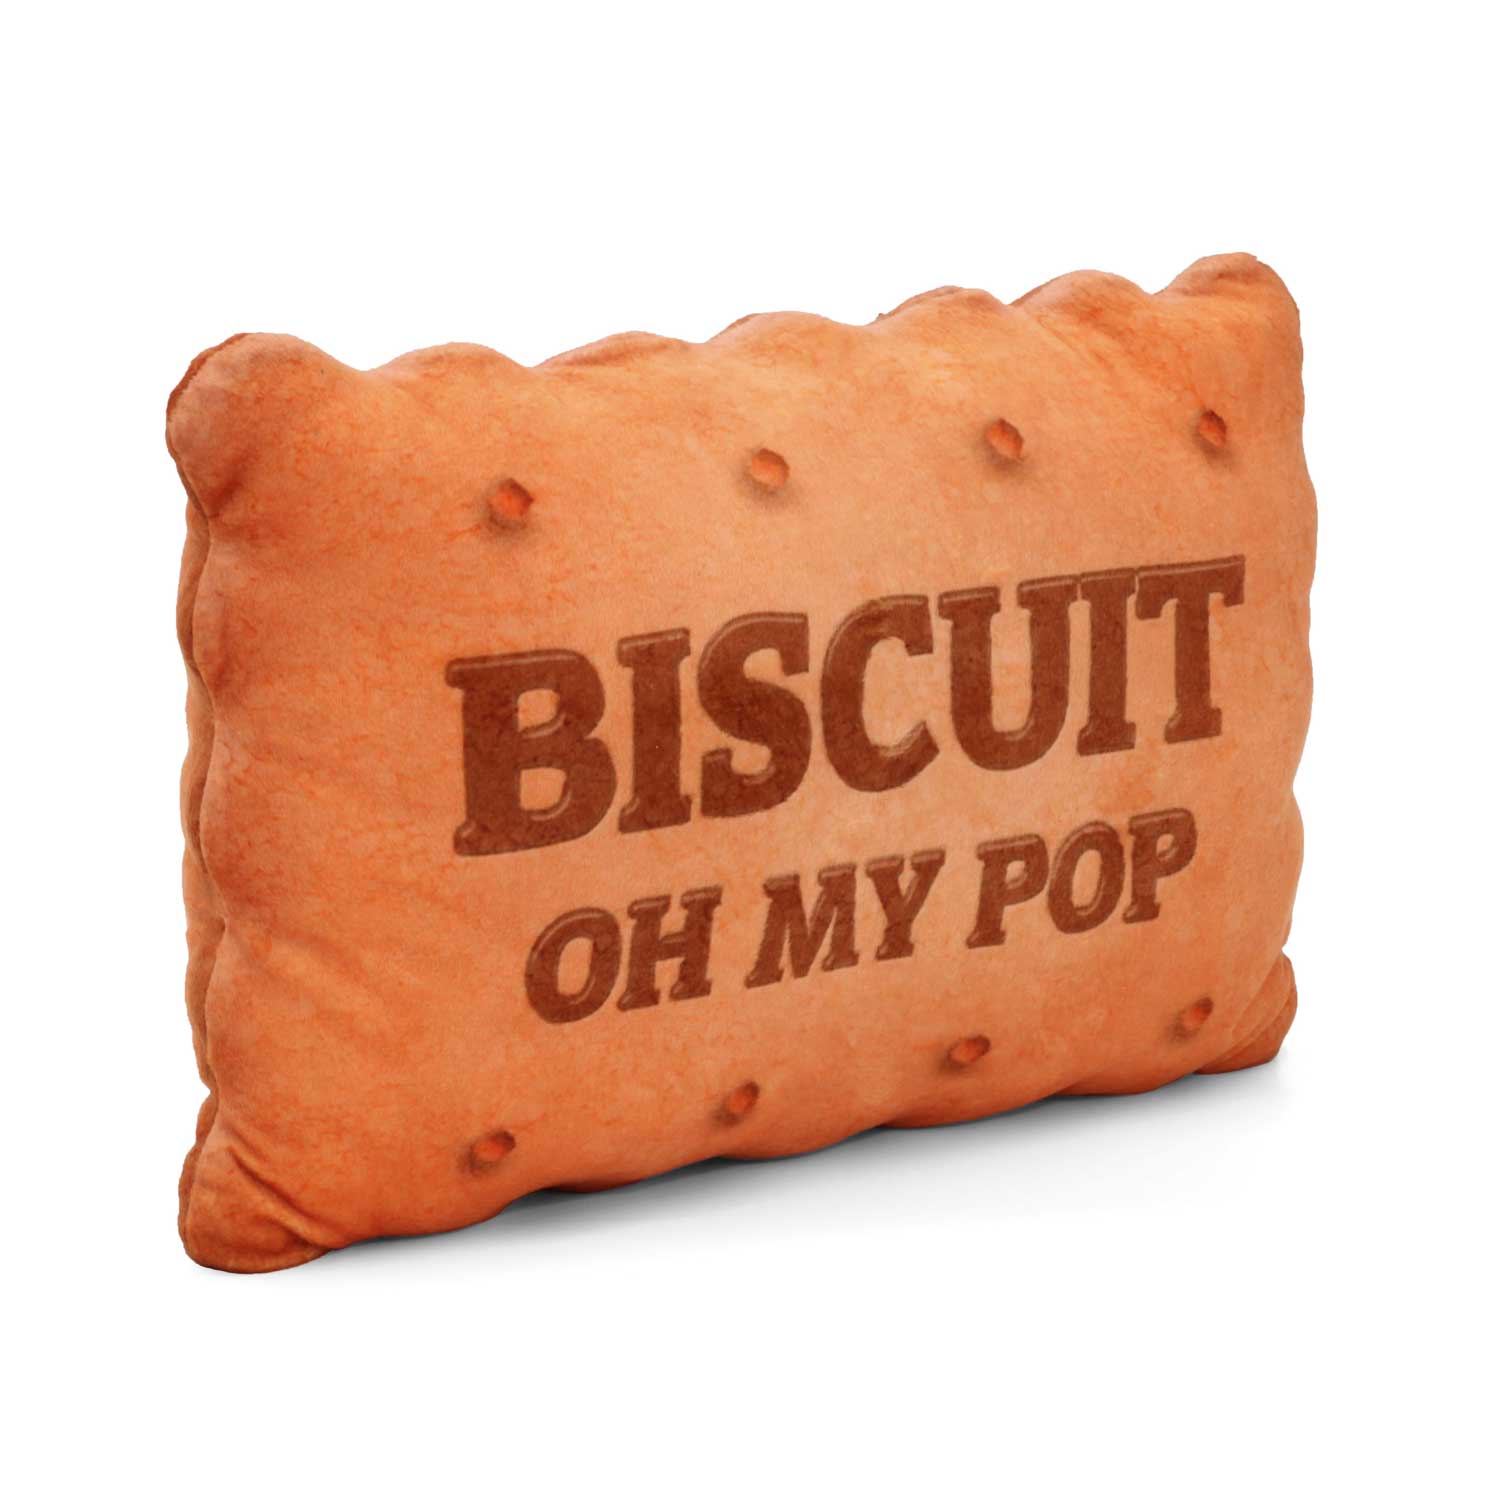 Cuscino Grande Oh My Pop! Biscuit Online - KARACTERMANIA